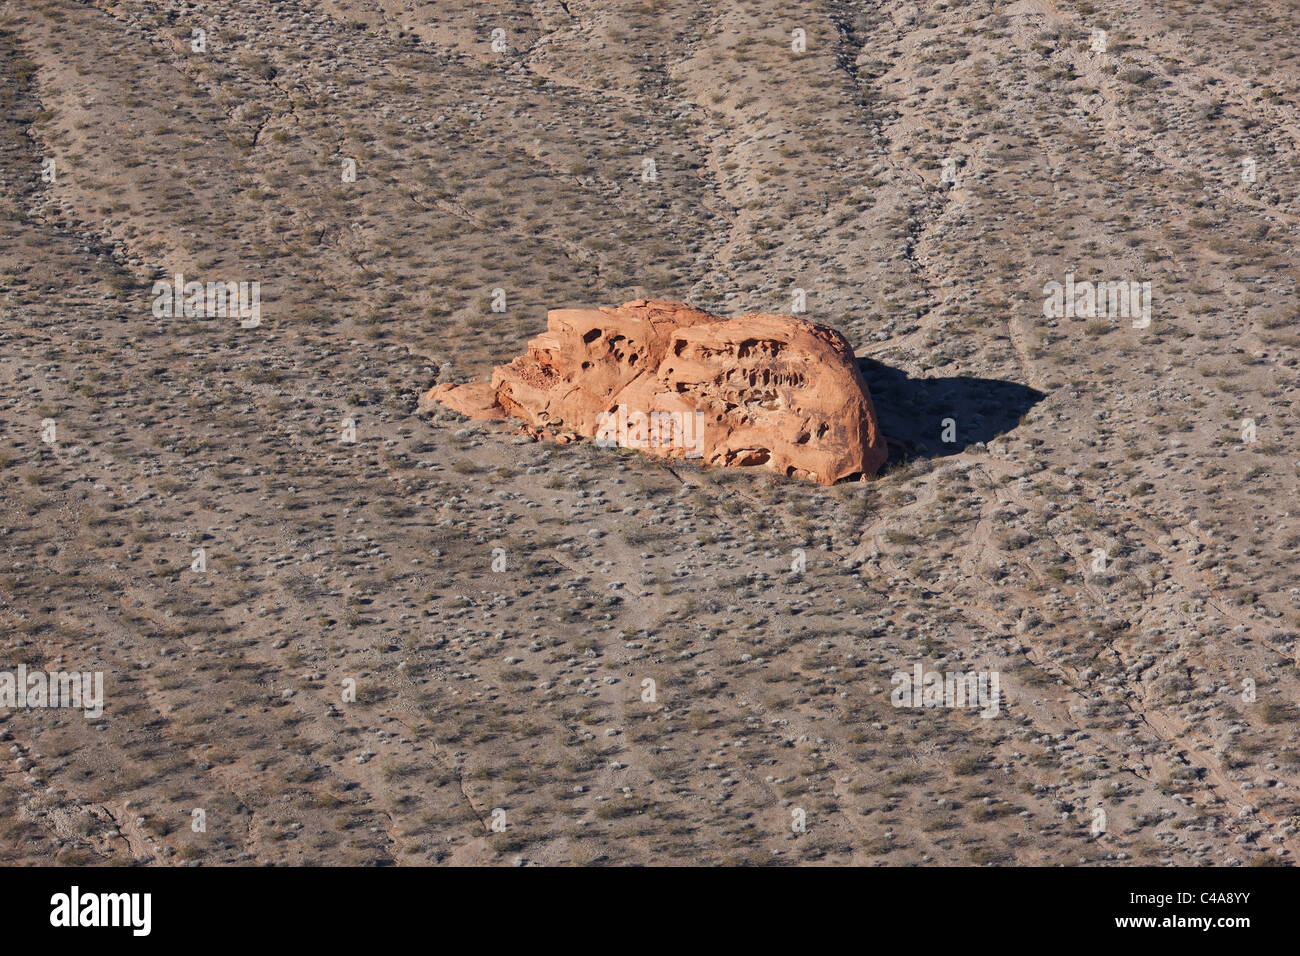 LUFTAUFNAHME. Roter Sandsteinausbisauf in der Mojave-Wüste. Valley of Fire State Park, Clark County, Nevada, USA. Stockfoto